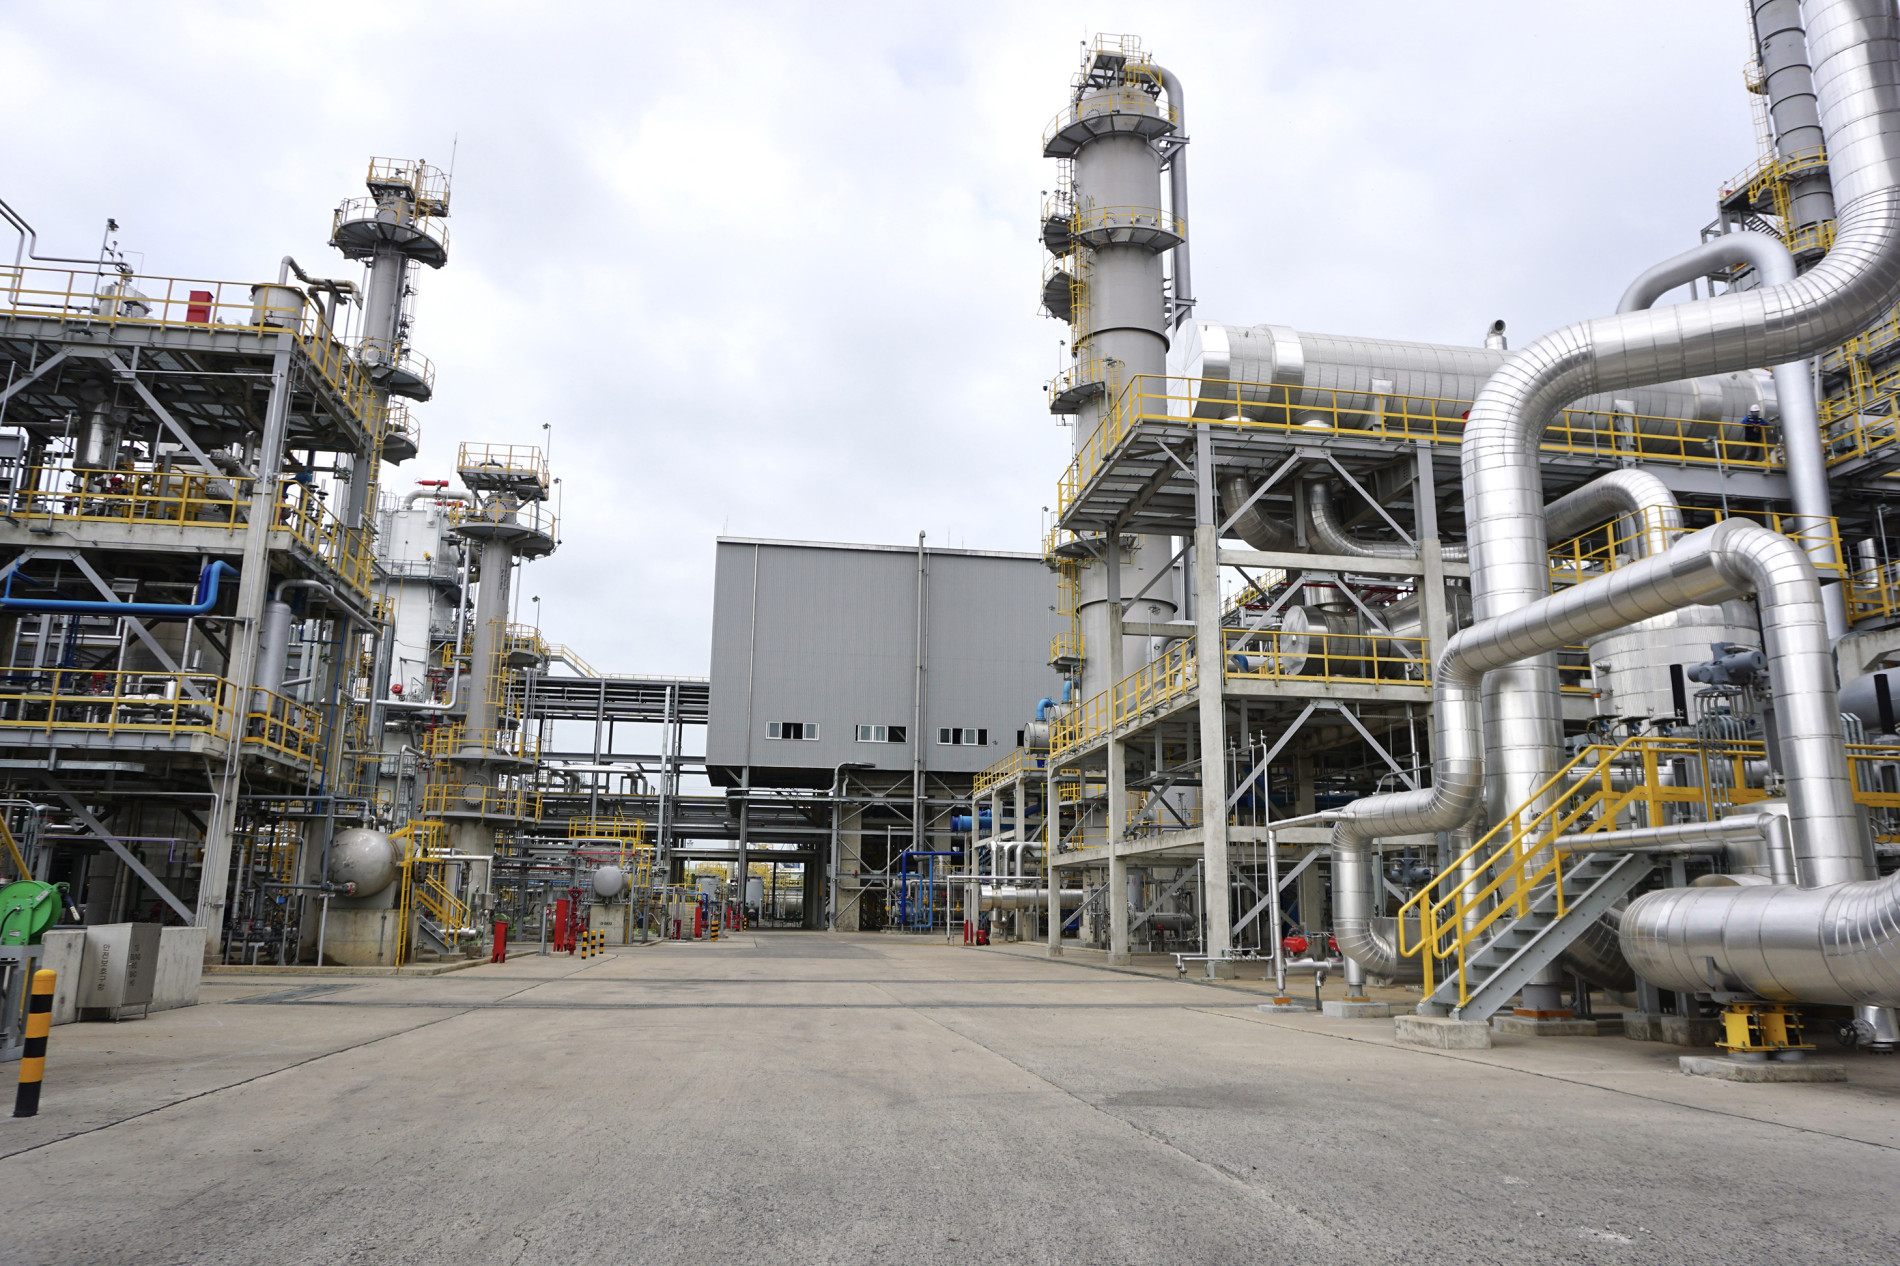 Các KCN của tỉnh định hướng thu hút các dự án có quy mô lớn, hiện đại, sử dụng công nghệ thân thiện môi trường. Trong ảnh: Nhà máy sản xuất Polypropylene (PP) và Kho ngầm chứa khí hóa lỏng của Hyosung tại KCN Cái Mép, TX. Phú Mỹ.